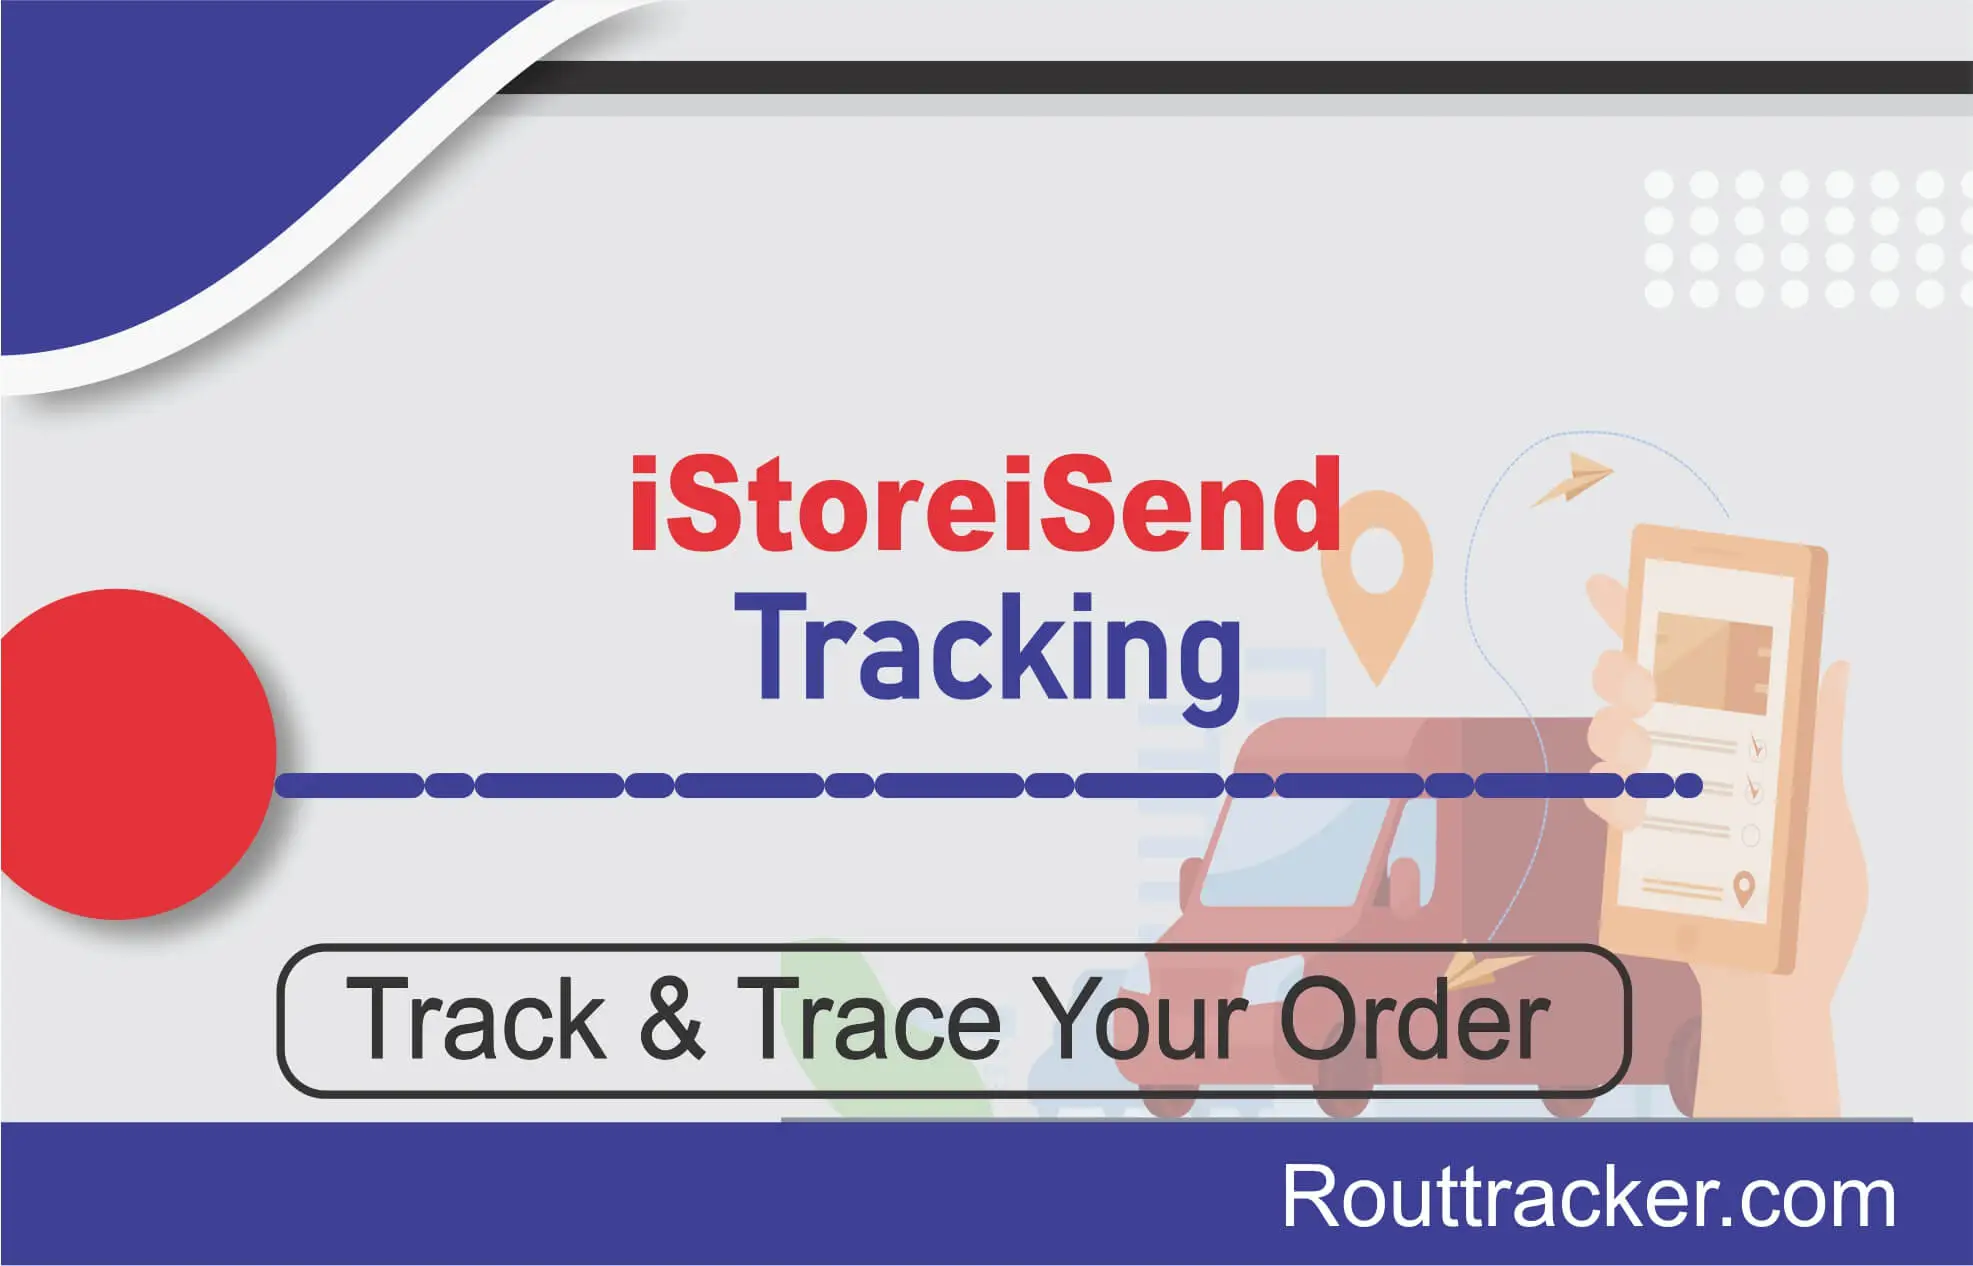 iStoreiSend Tracking